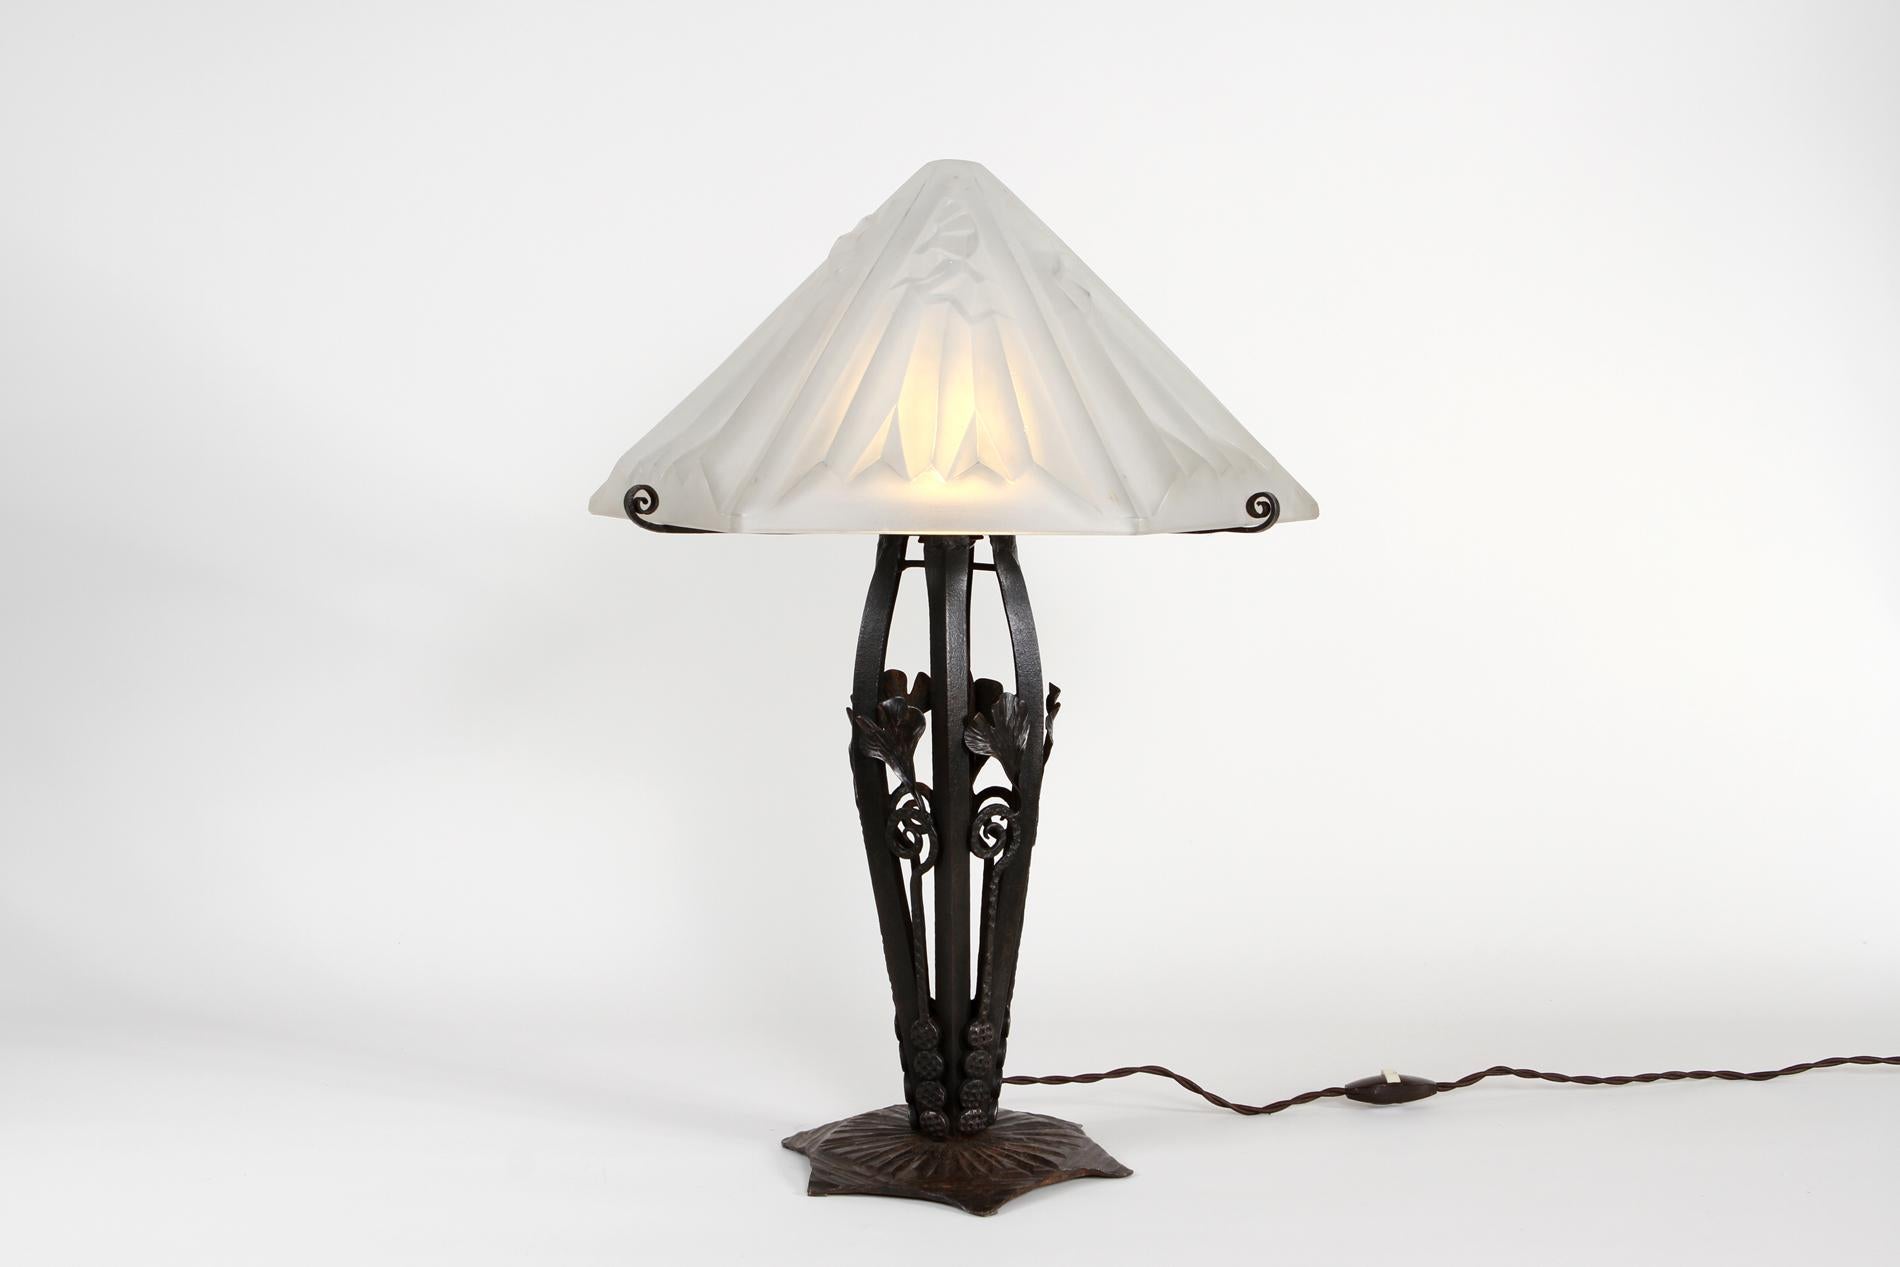 Original französische Art Deco Tischlampe von Degué, Sockel aus Schmiedeeisen und Lampenschirm von Degué, signiert. Die Originalität der Leuchte liegt in der Form des Lampenschirms mit dem ikonischen Degué-Dekor. Bigli macht ein schönes Licht und